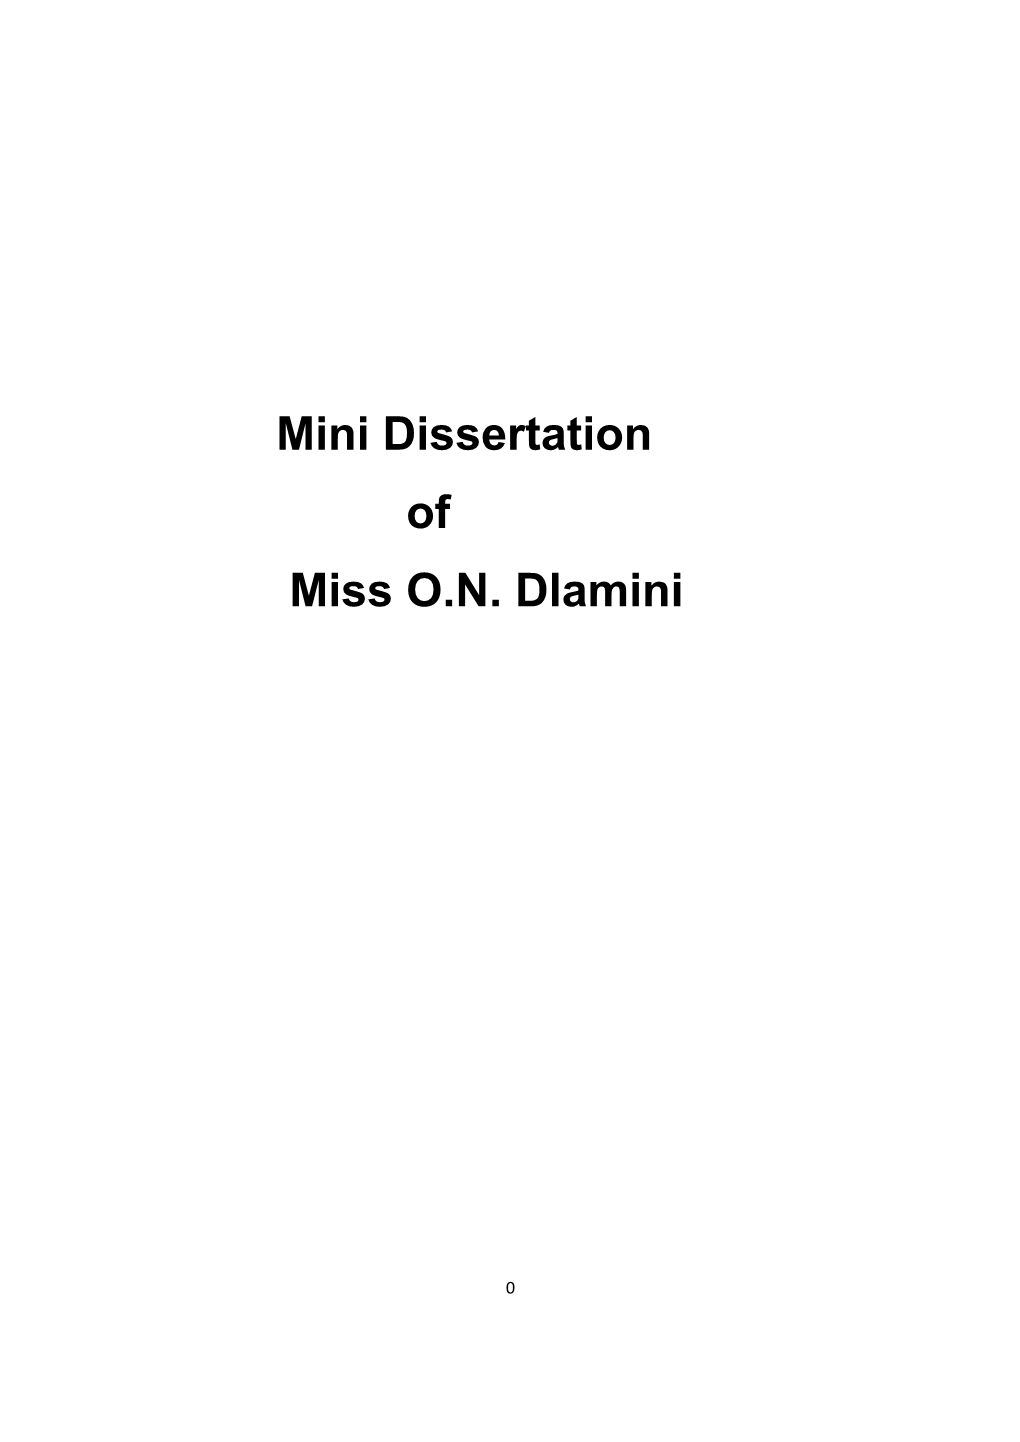 Mini Dissertation of Miss O.N. Dlamini